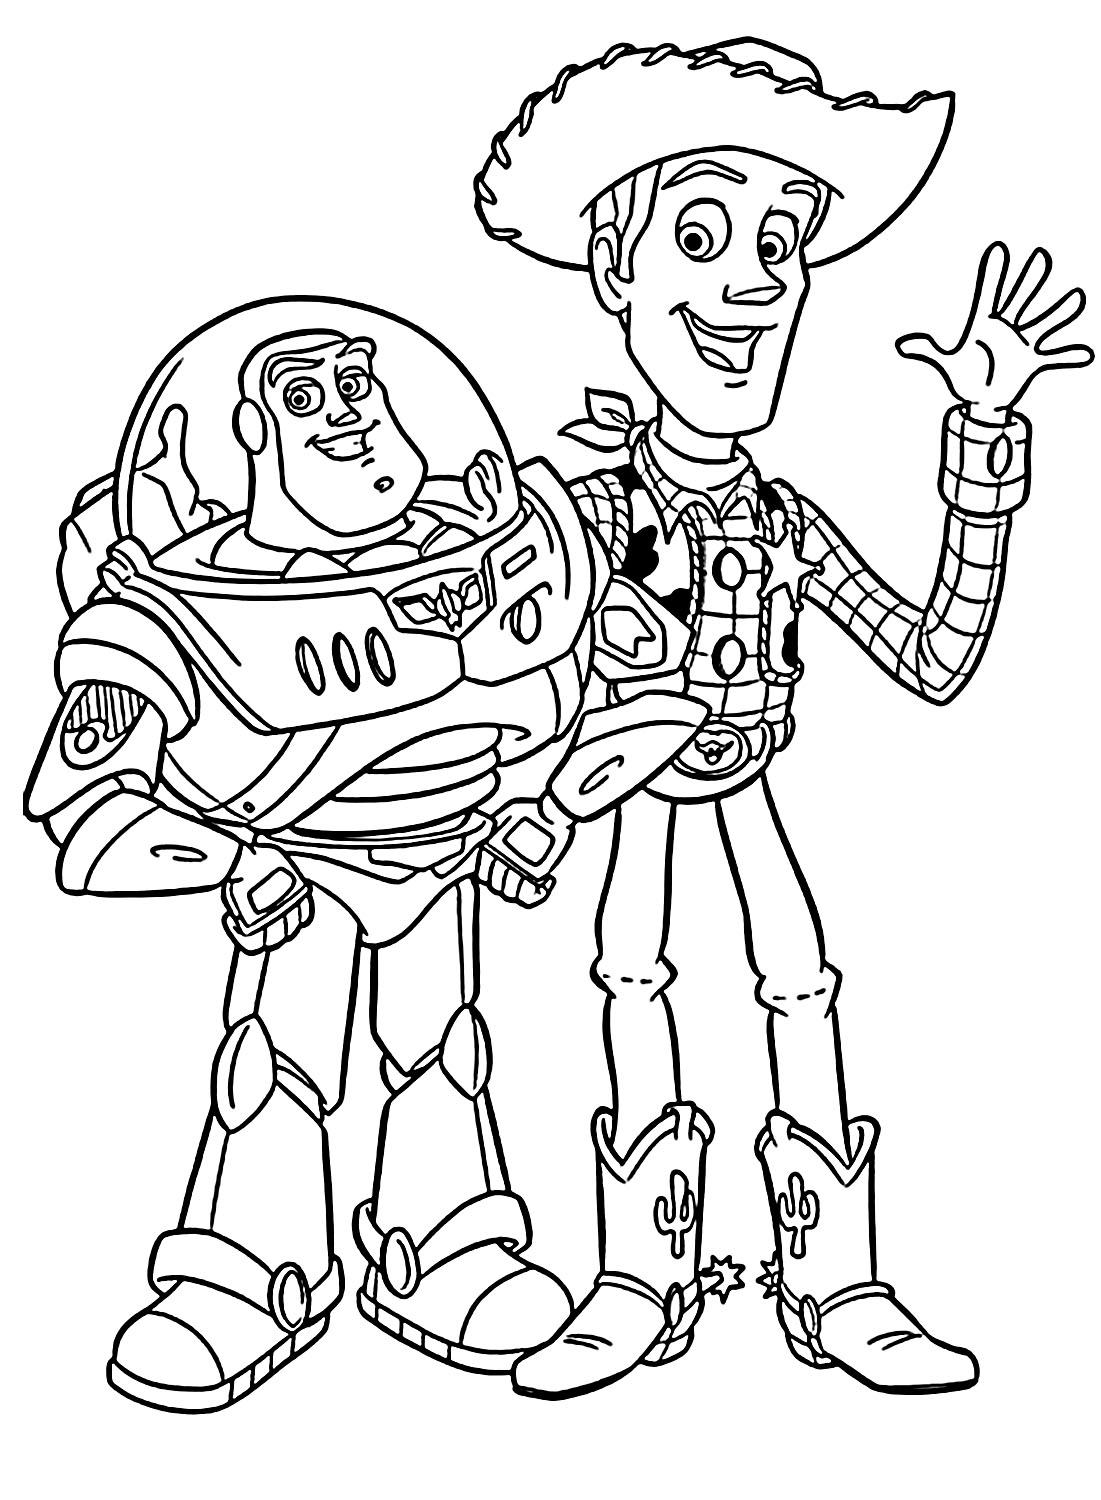 Woody und Buzz von Buzz Lightyear